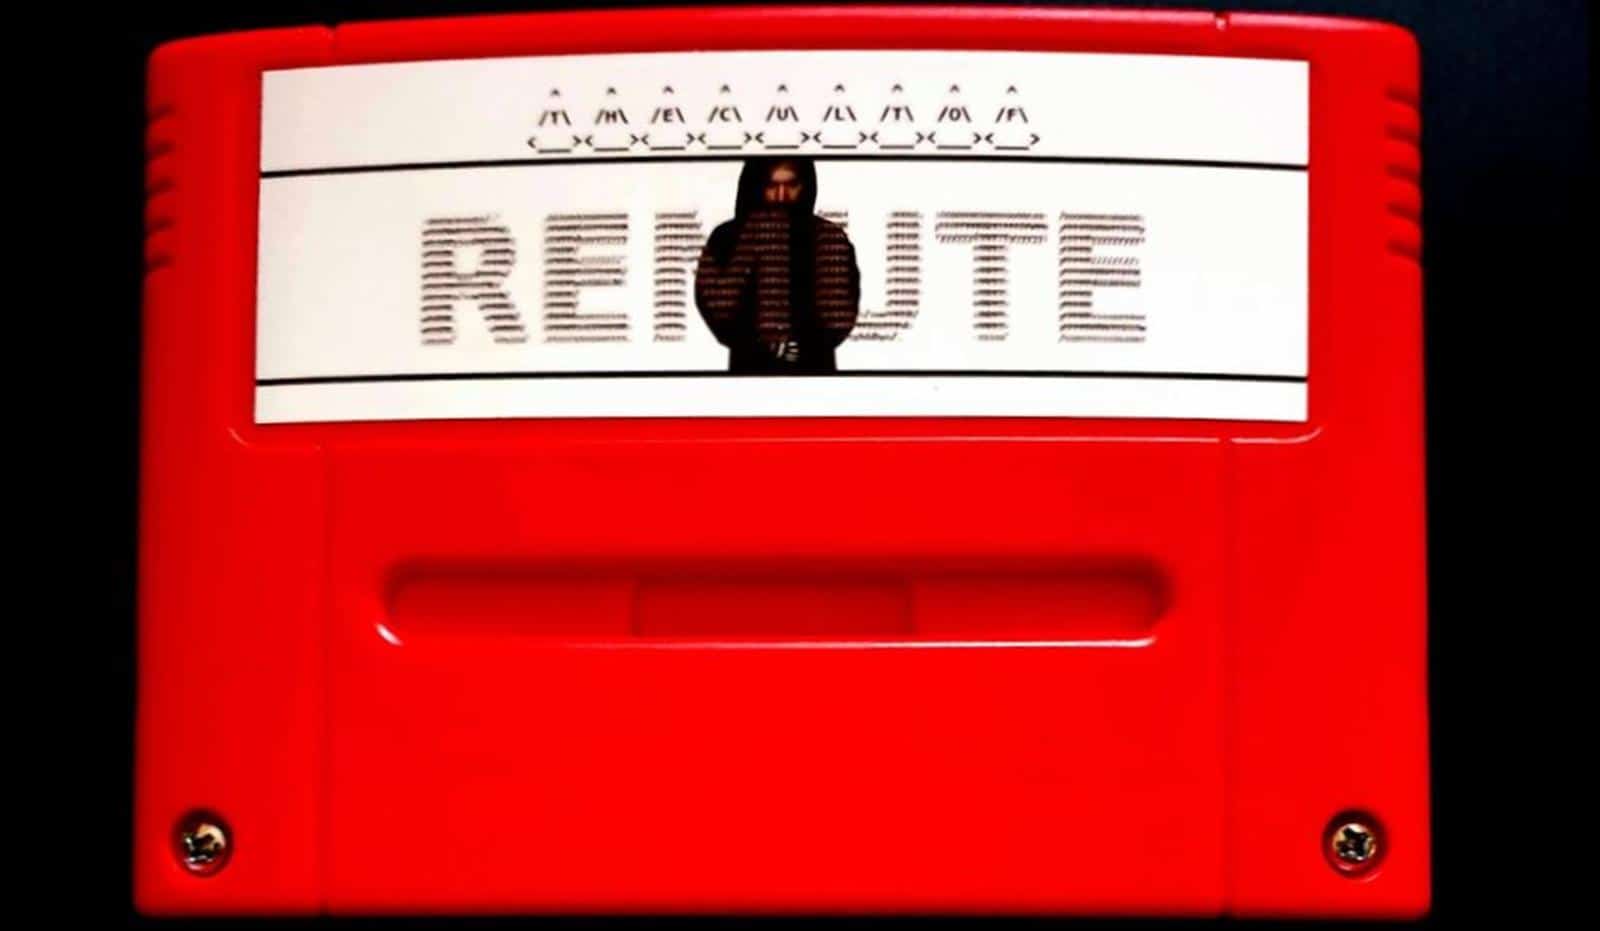 Artis Techno Remute meluncurkan album pada kartrid SNES - Inilah mengapa dia melakukannya 1